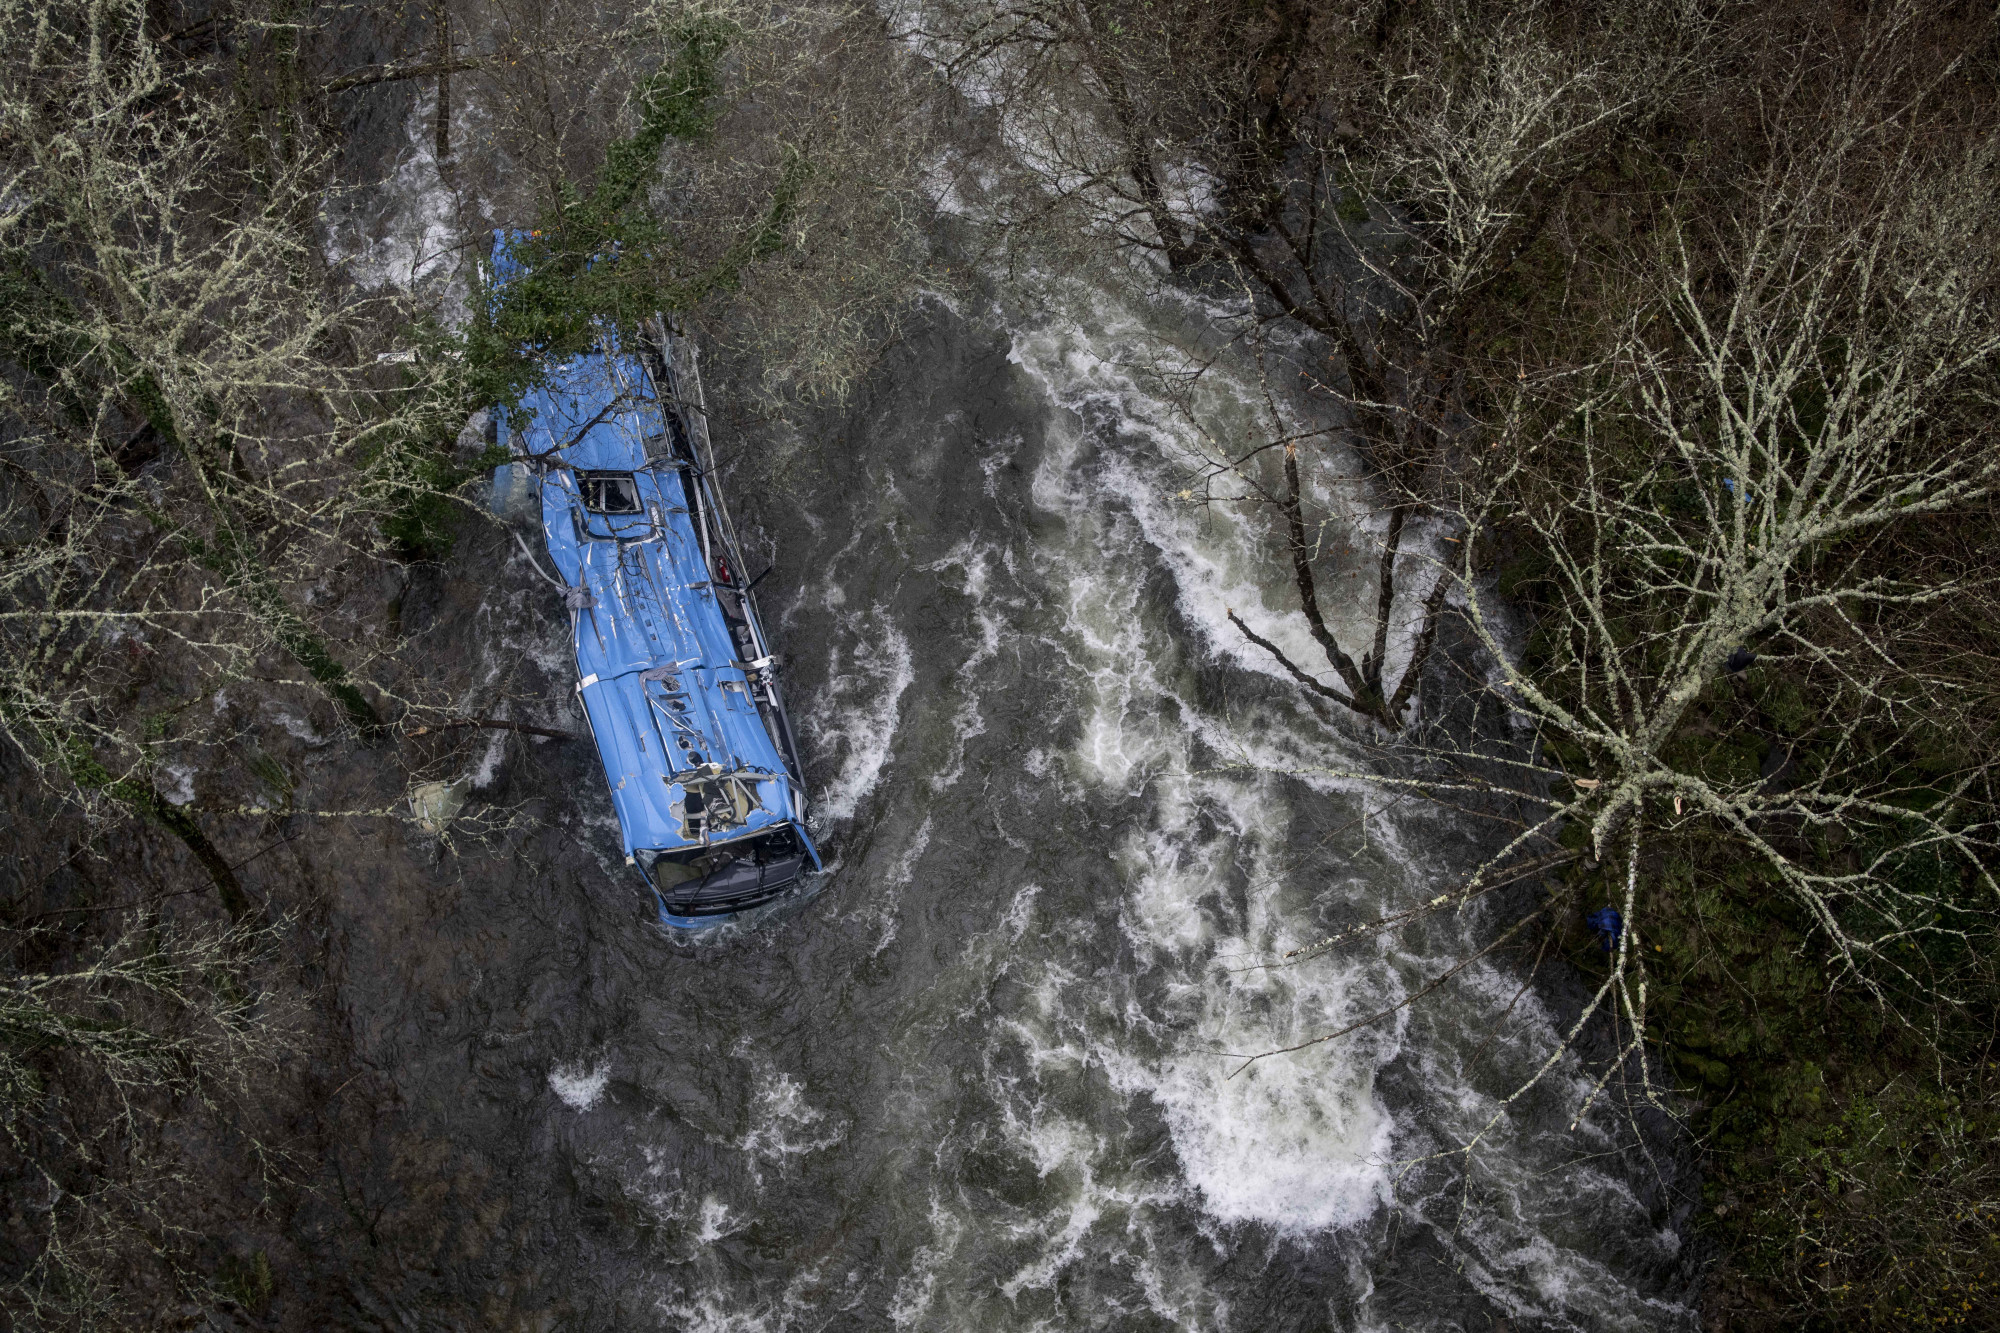 Hatan meghaltak, miután egy busz 40 métert zuhant a folyóba egy spanyolországi hídról